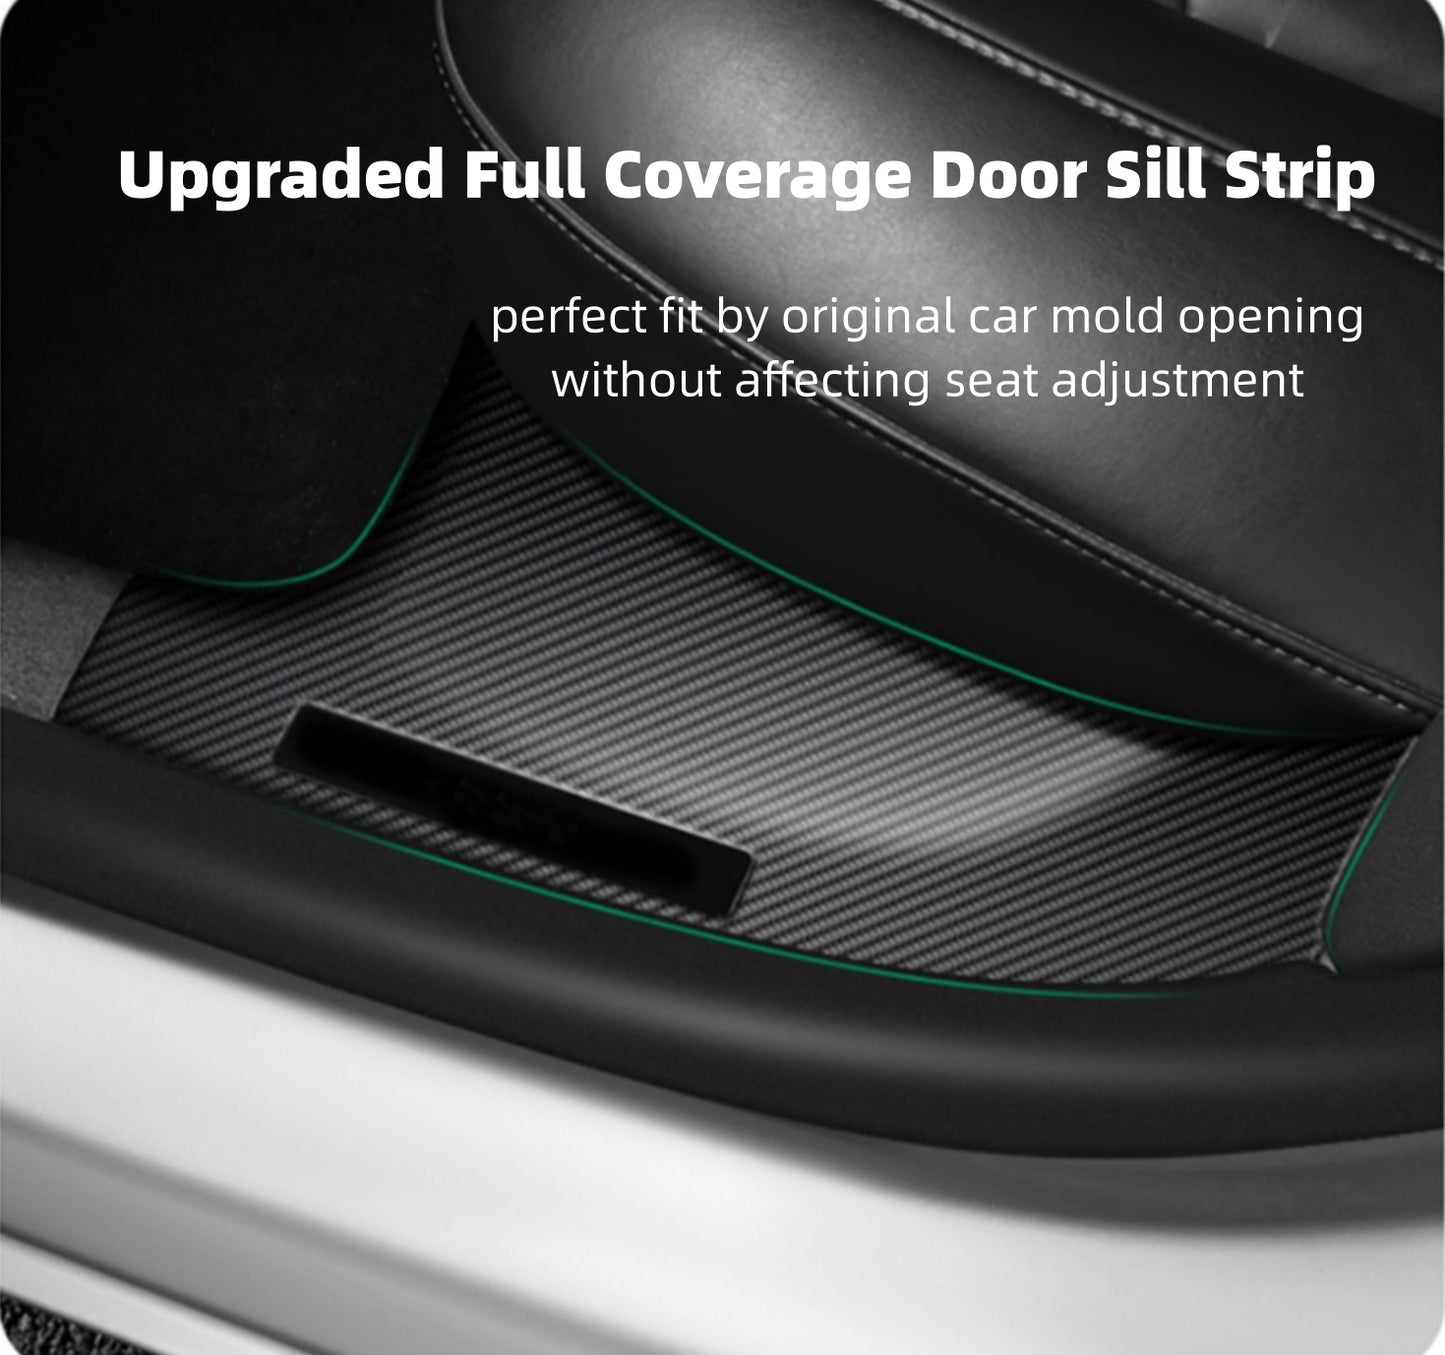 Premium Fibra de Carbono Frontal & Protetores de Soleira da Porta Traseira Proteção Completa para o Modelo 3/Y